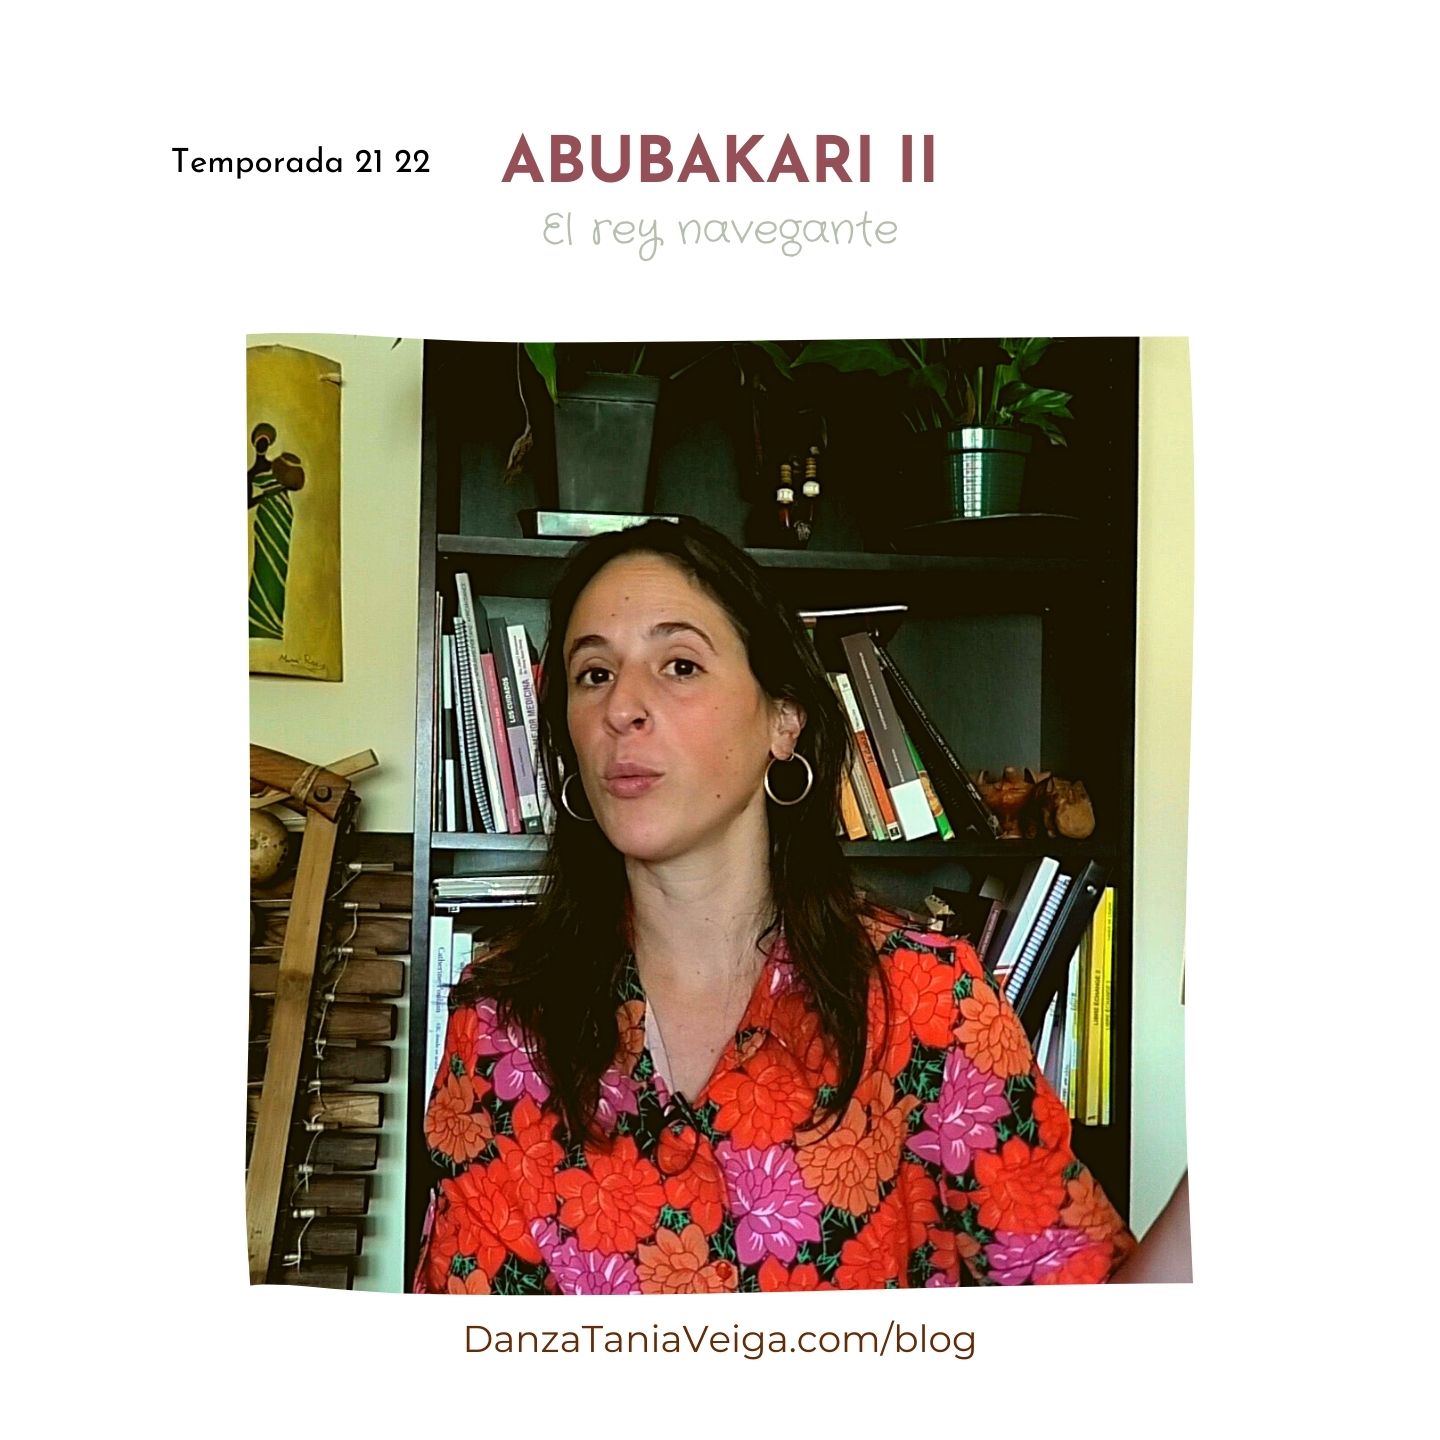 Abubakari II